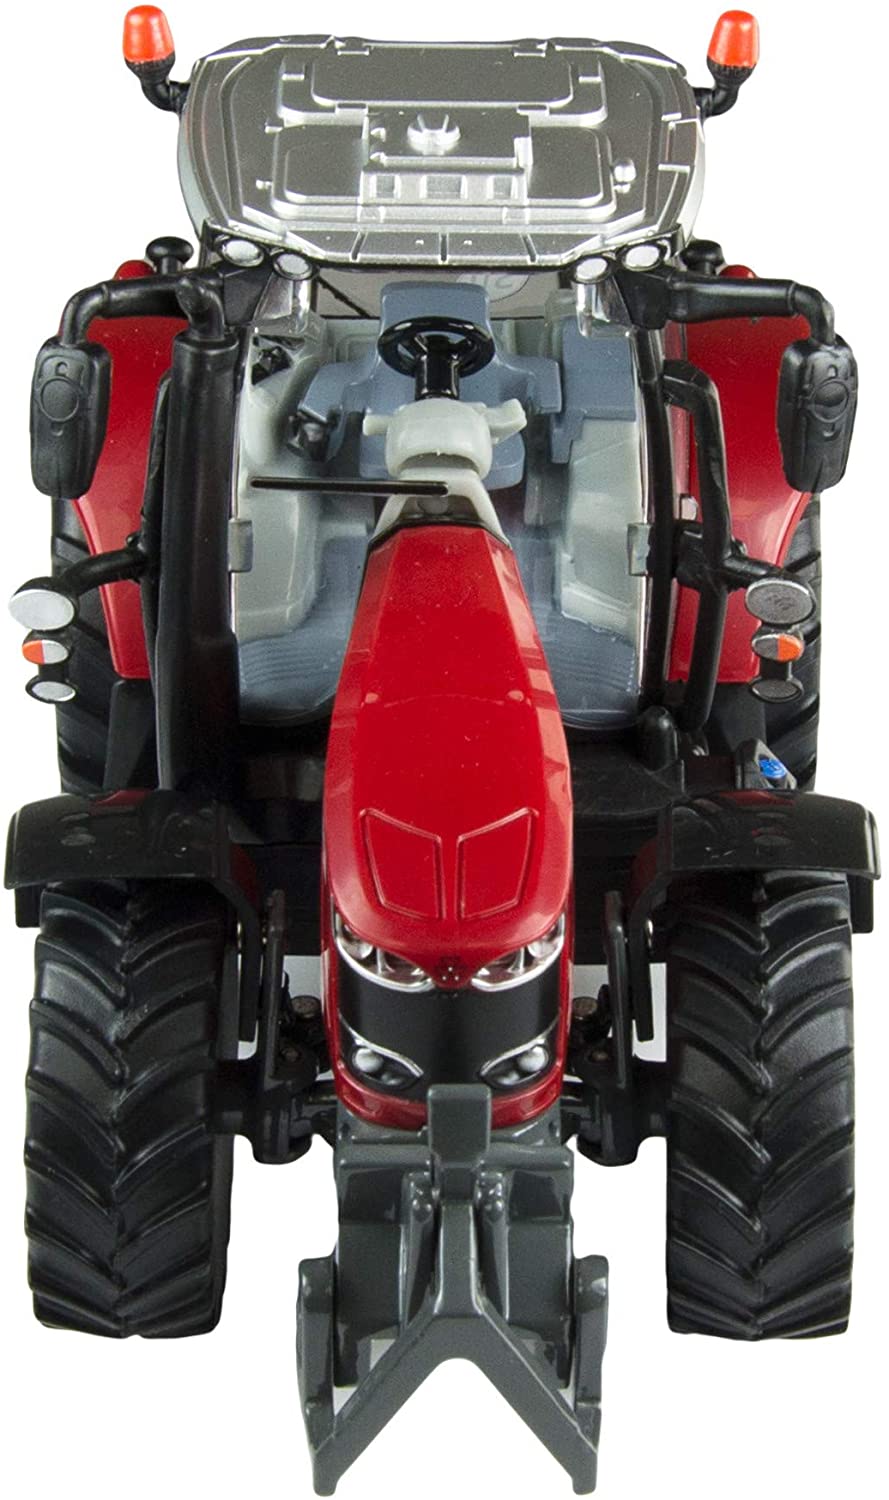 Britains 1:32 Massey Ferguson 6718 S Traktorspielzeug, Sammelspielzeug für den Bauernhof